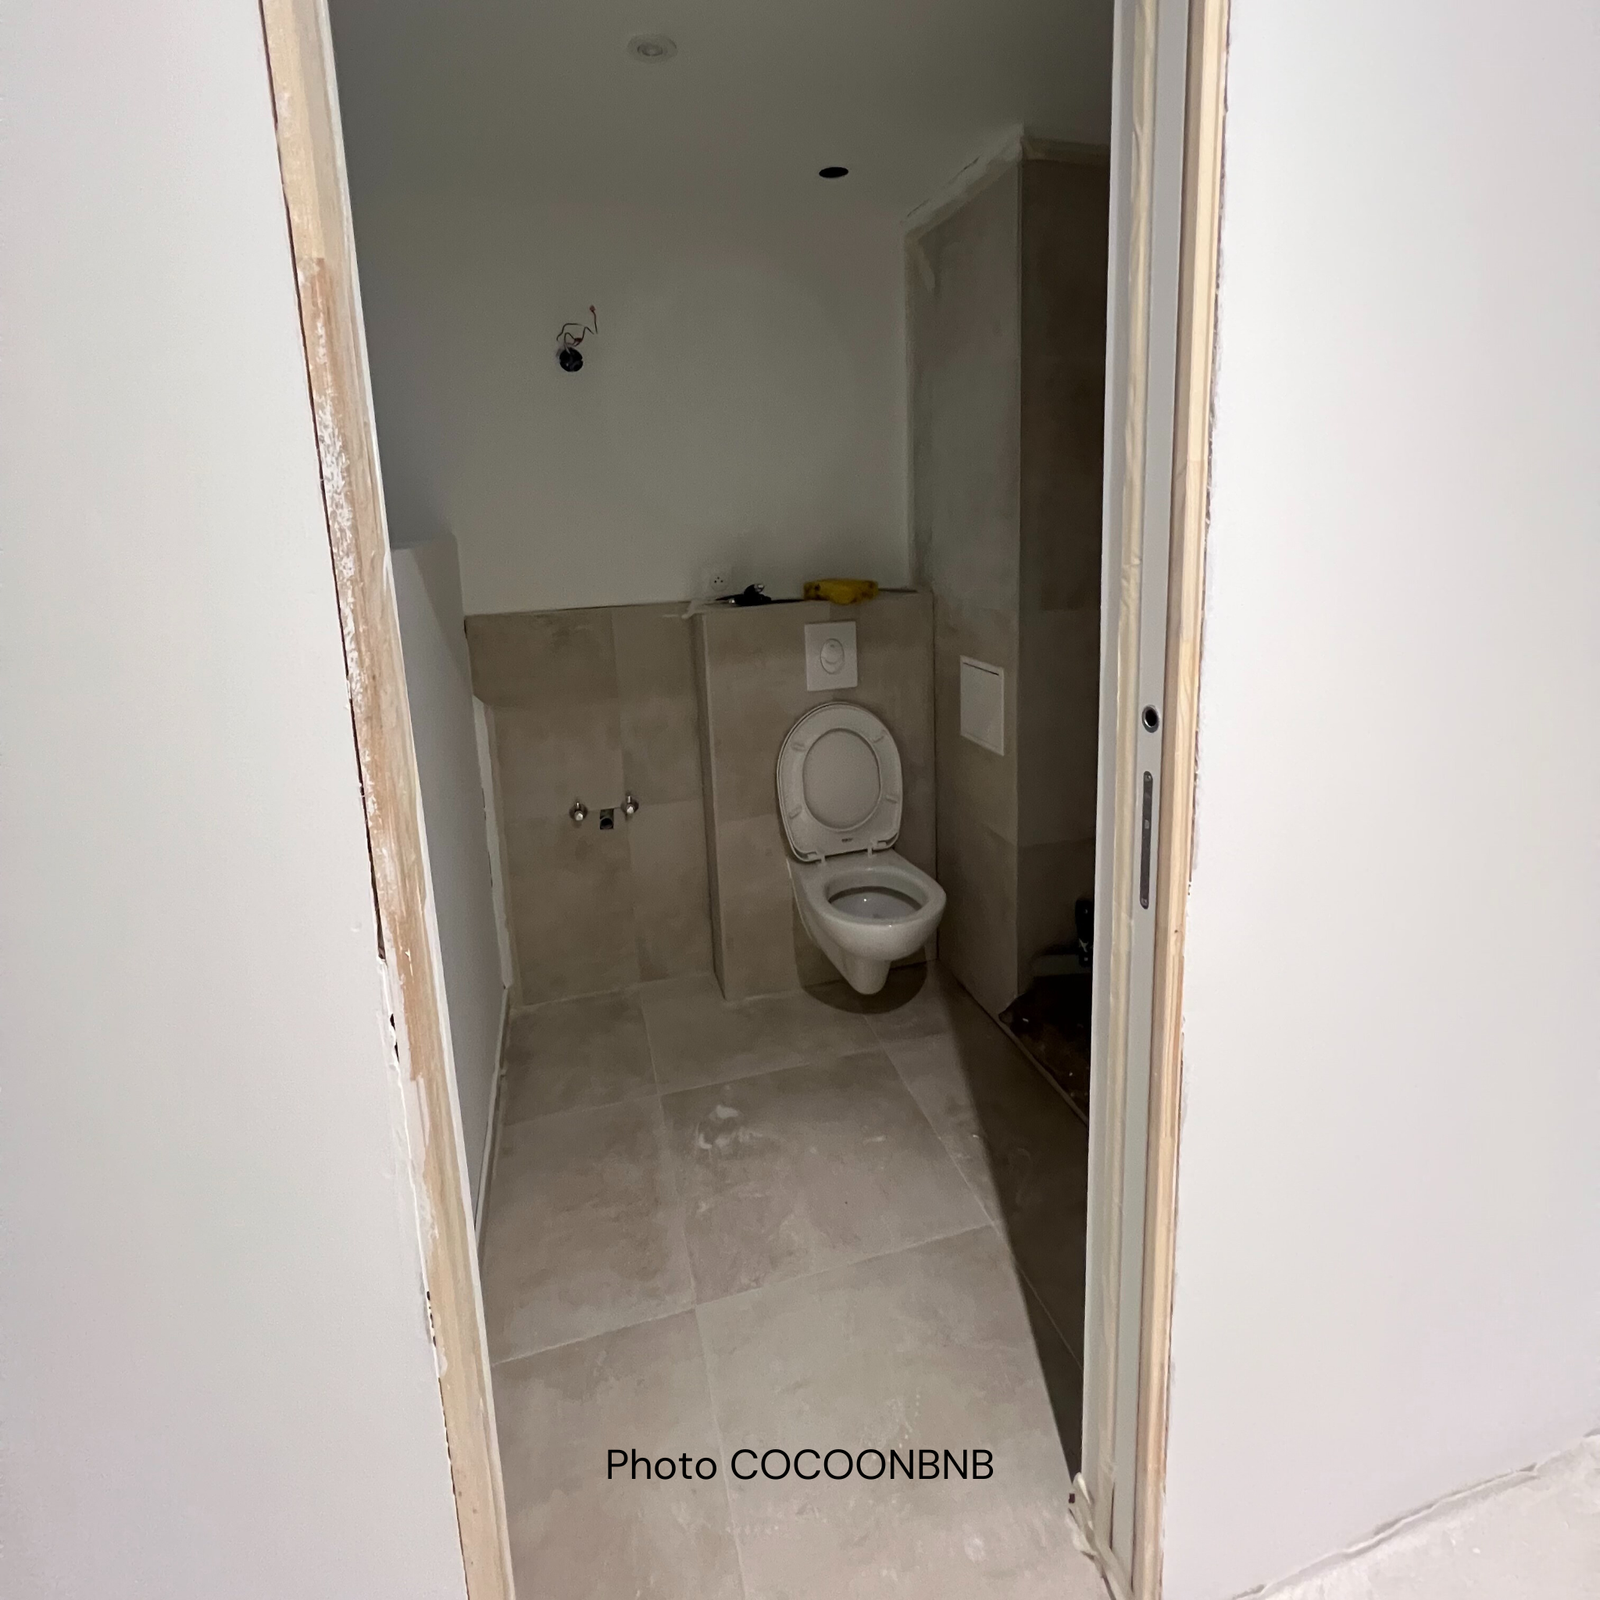 Focus sur une salle de bain lors d'une rénovation complète d'un appartement par l'équipe Home-staging de la conciergerie COCOONBNB à Strasbourg